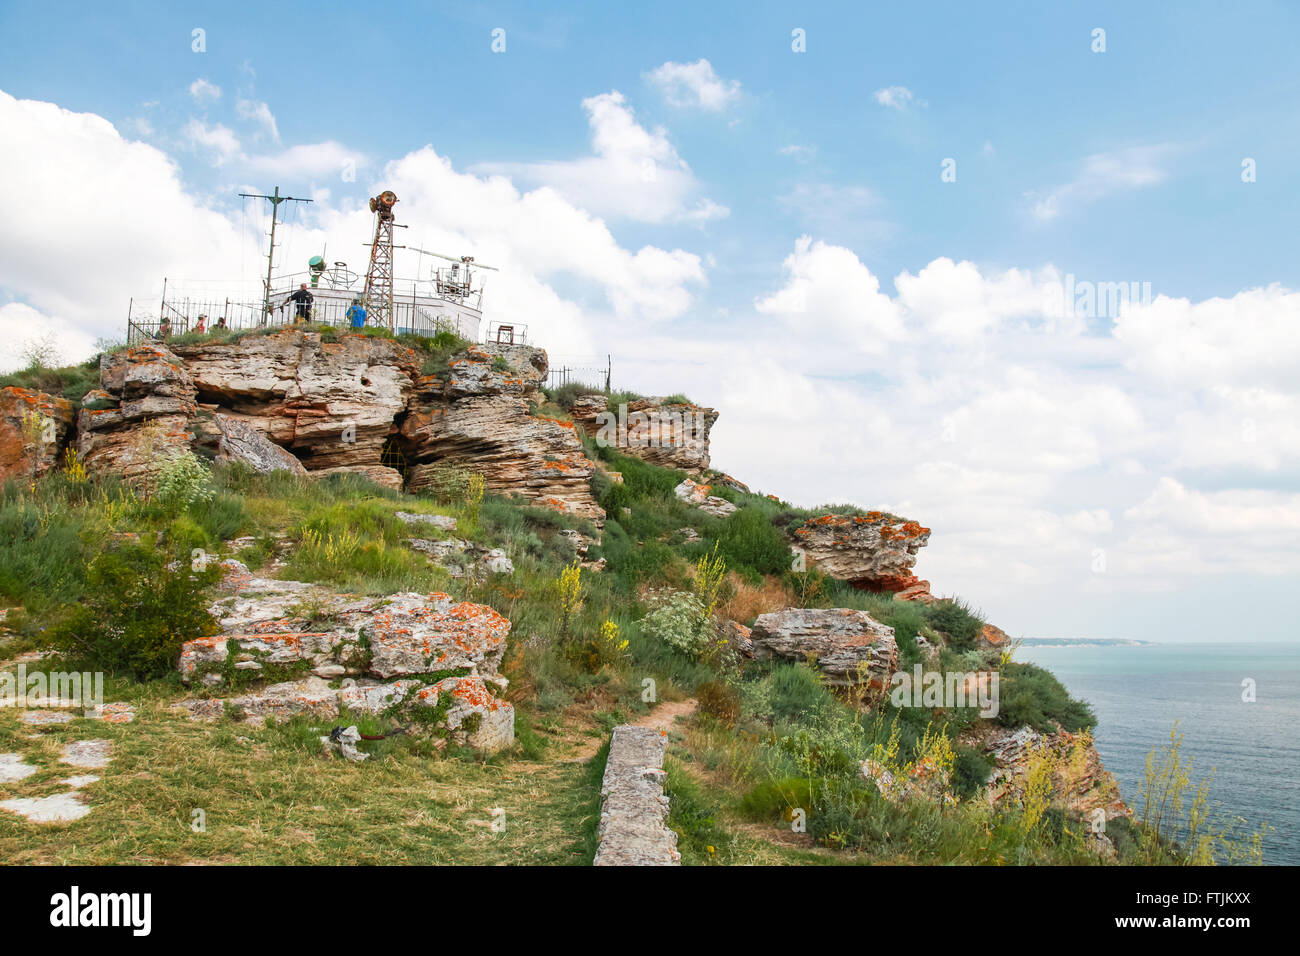 Touristischer Aussichtspunkt mit gewöhnlichen Touristen an der Spitze der Landzunge Kaliakra, Bulgarien Stockfoto